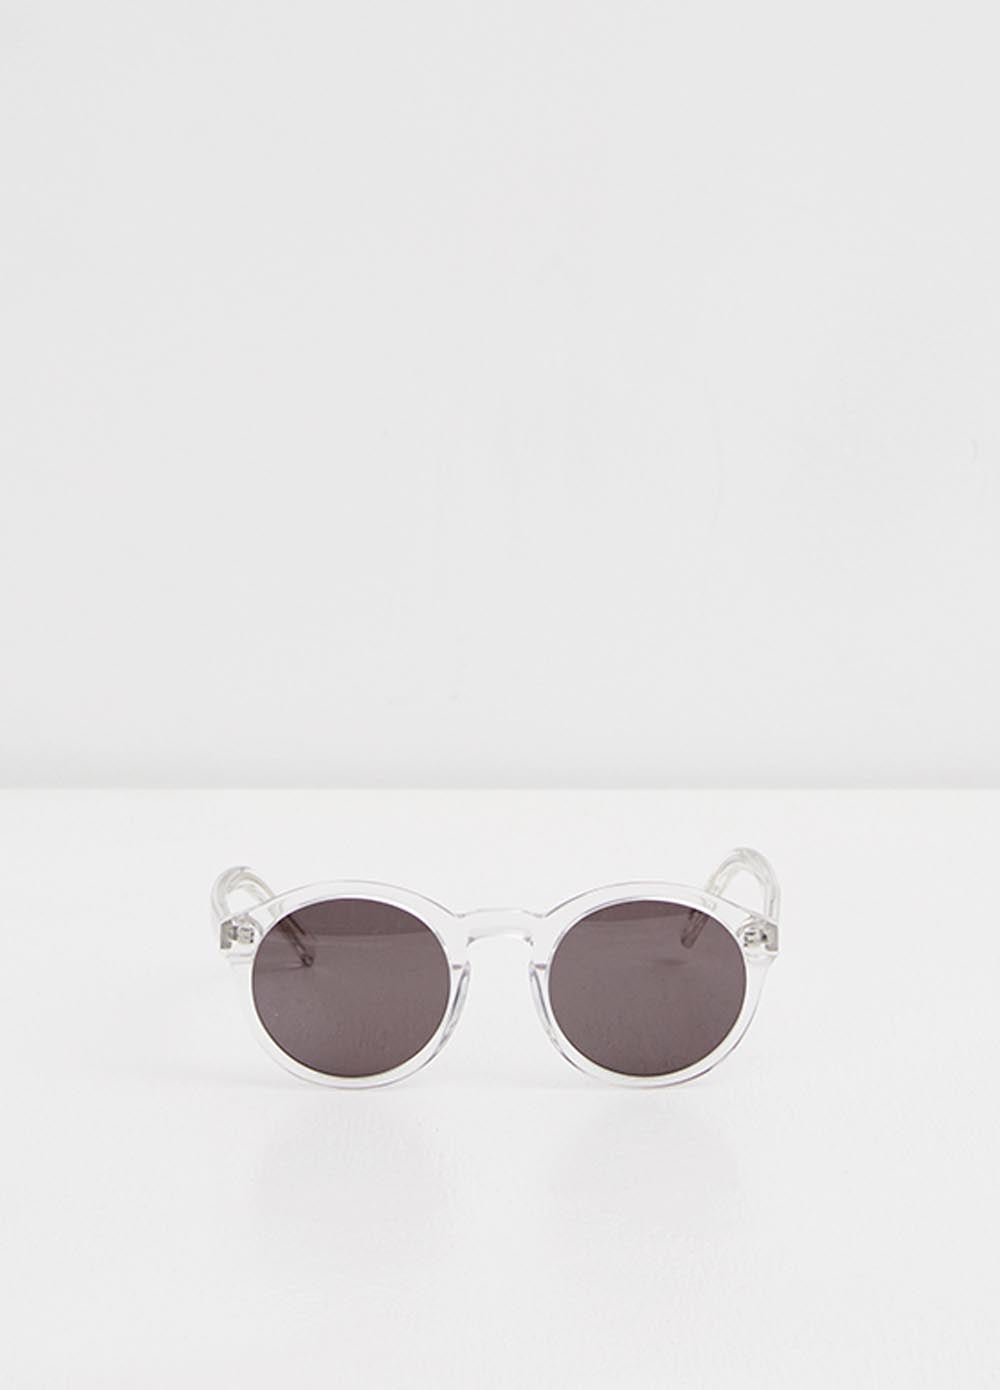 Barstow Sunglasses